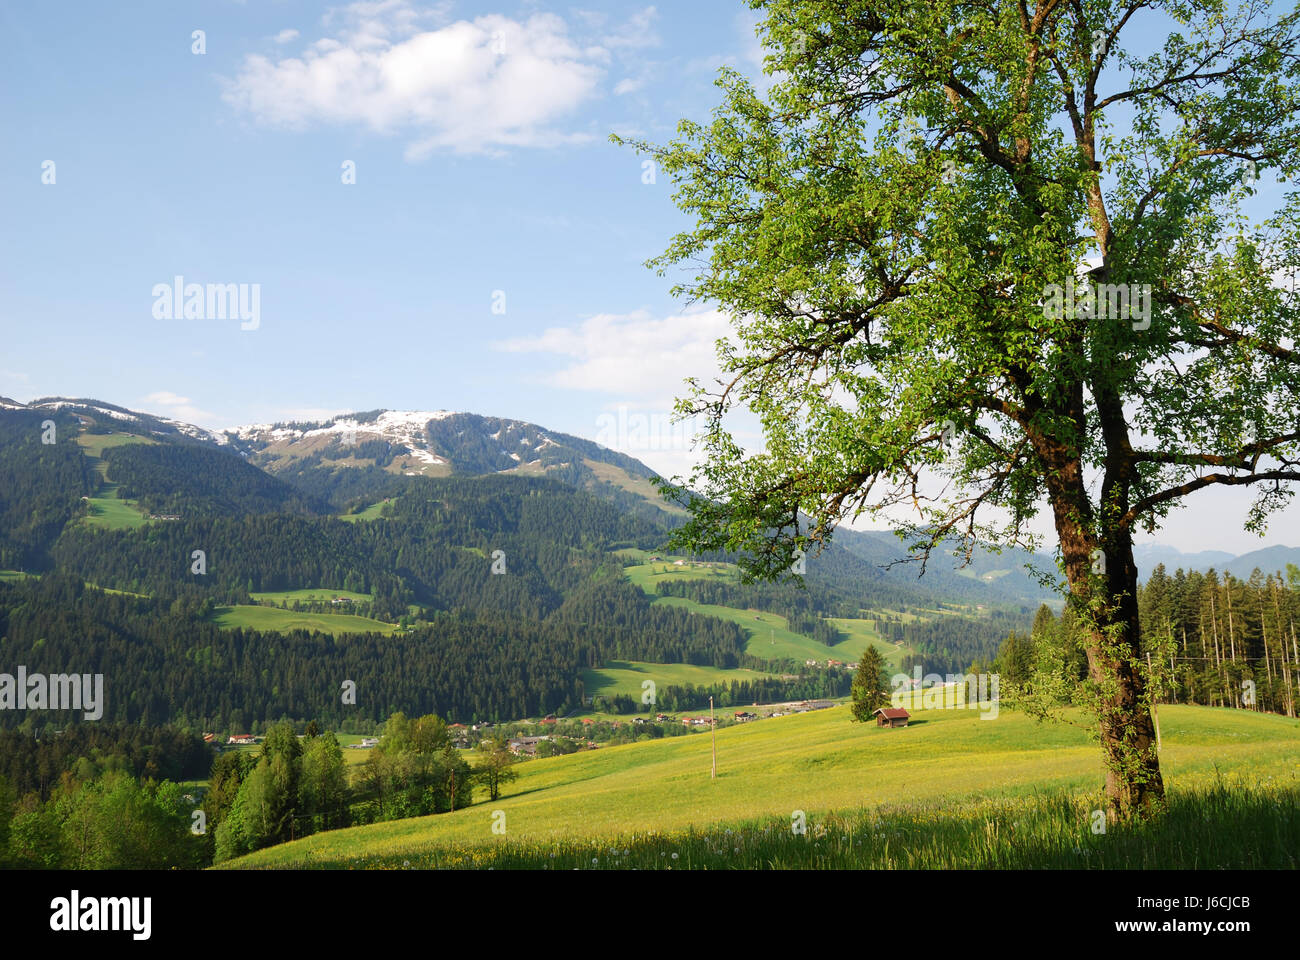 Montagne alpes autriche pays paysage paysage idyllique nature campagne Banque D'Images